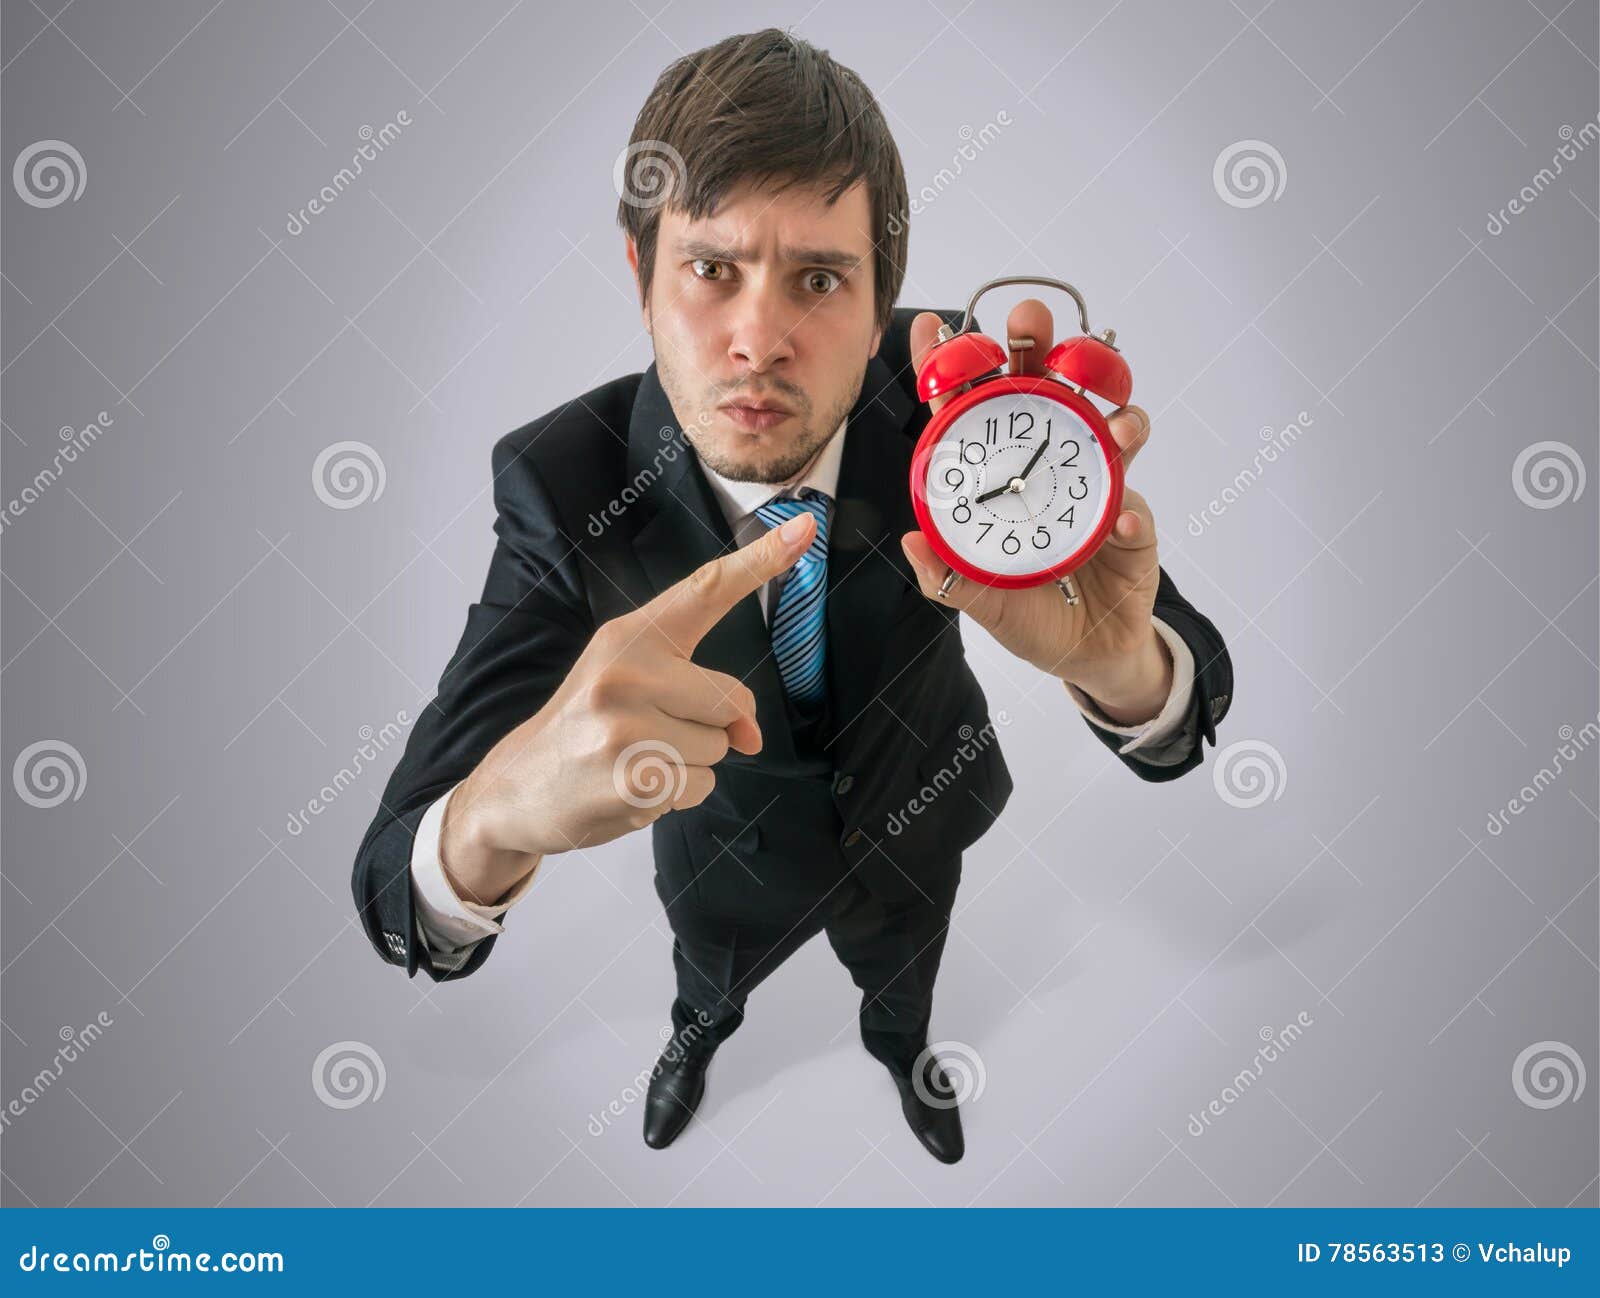 Мужчина смотрит на часы. Человек показывает на часы. Человек указывает на часы. Мужчина указывает на часы. Чел показывает на часы.